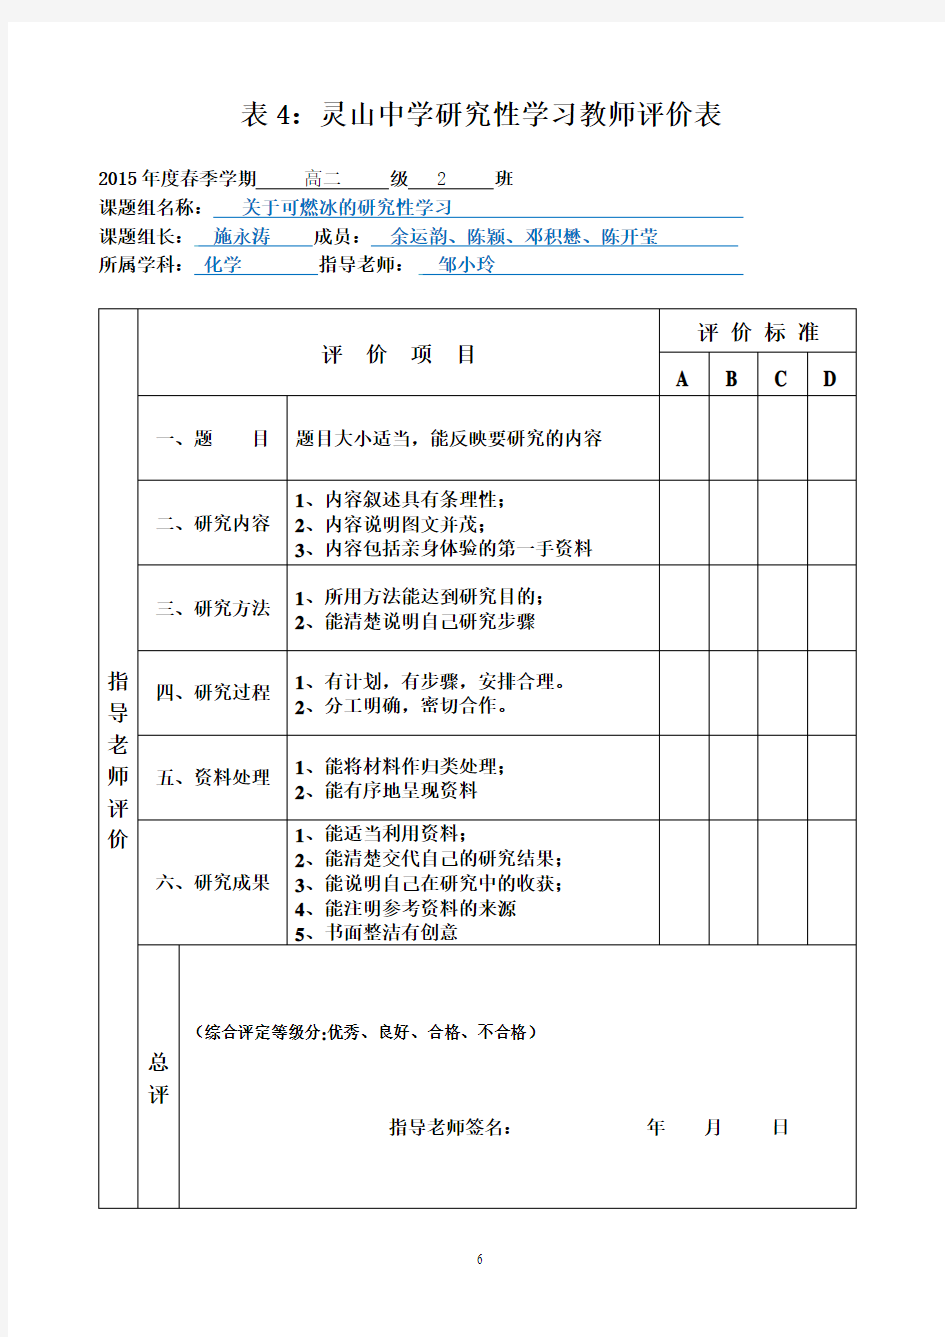 灵山中学研究性学习学生自评和教师评价表A4纸